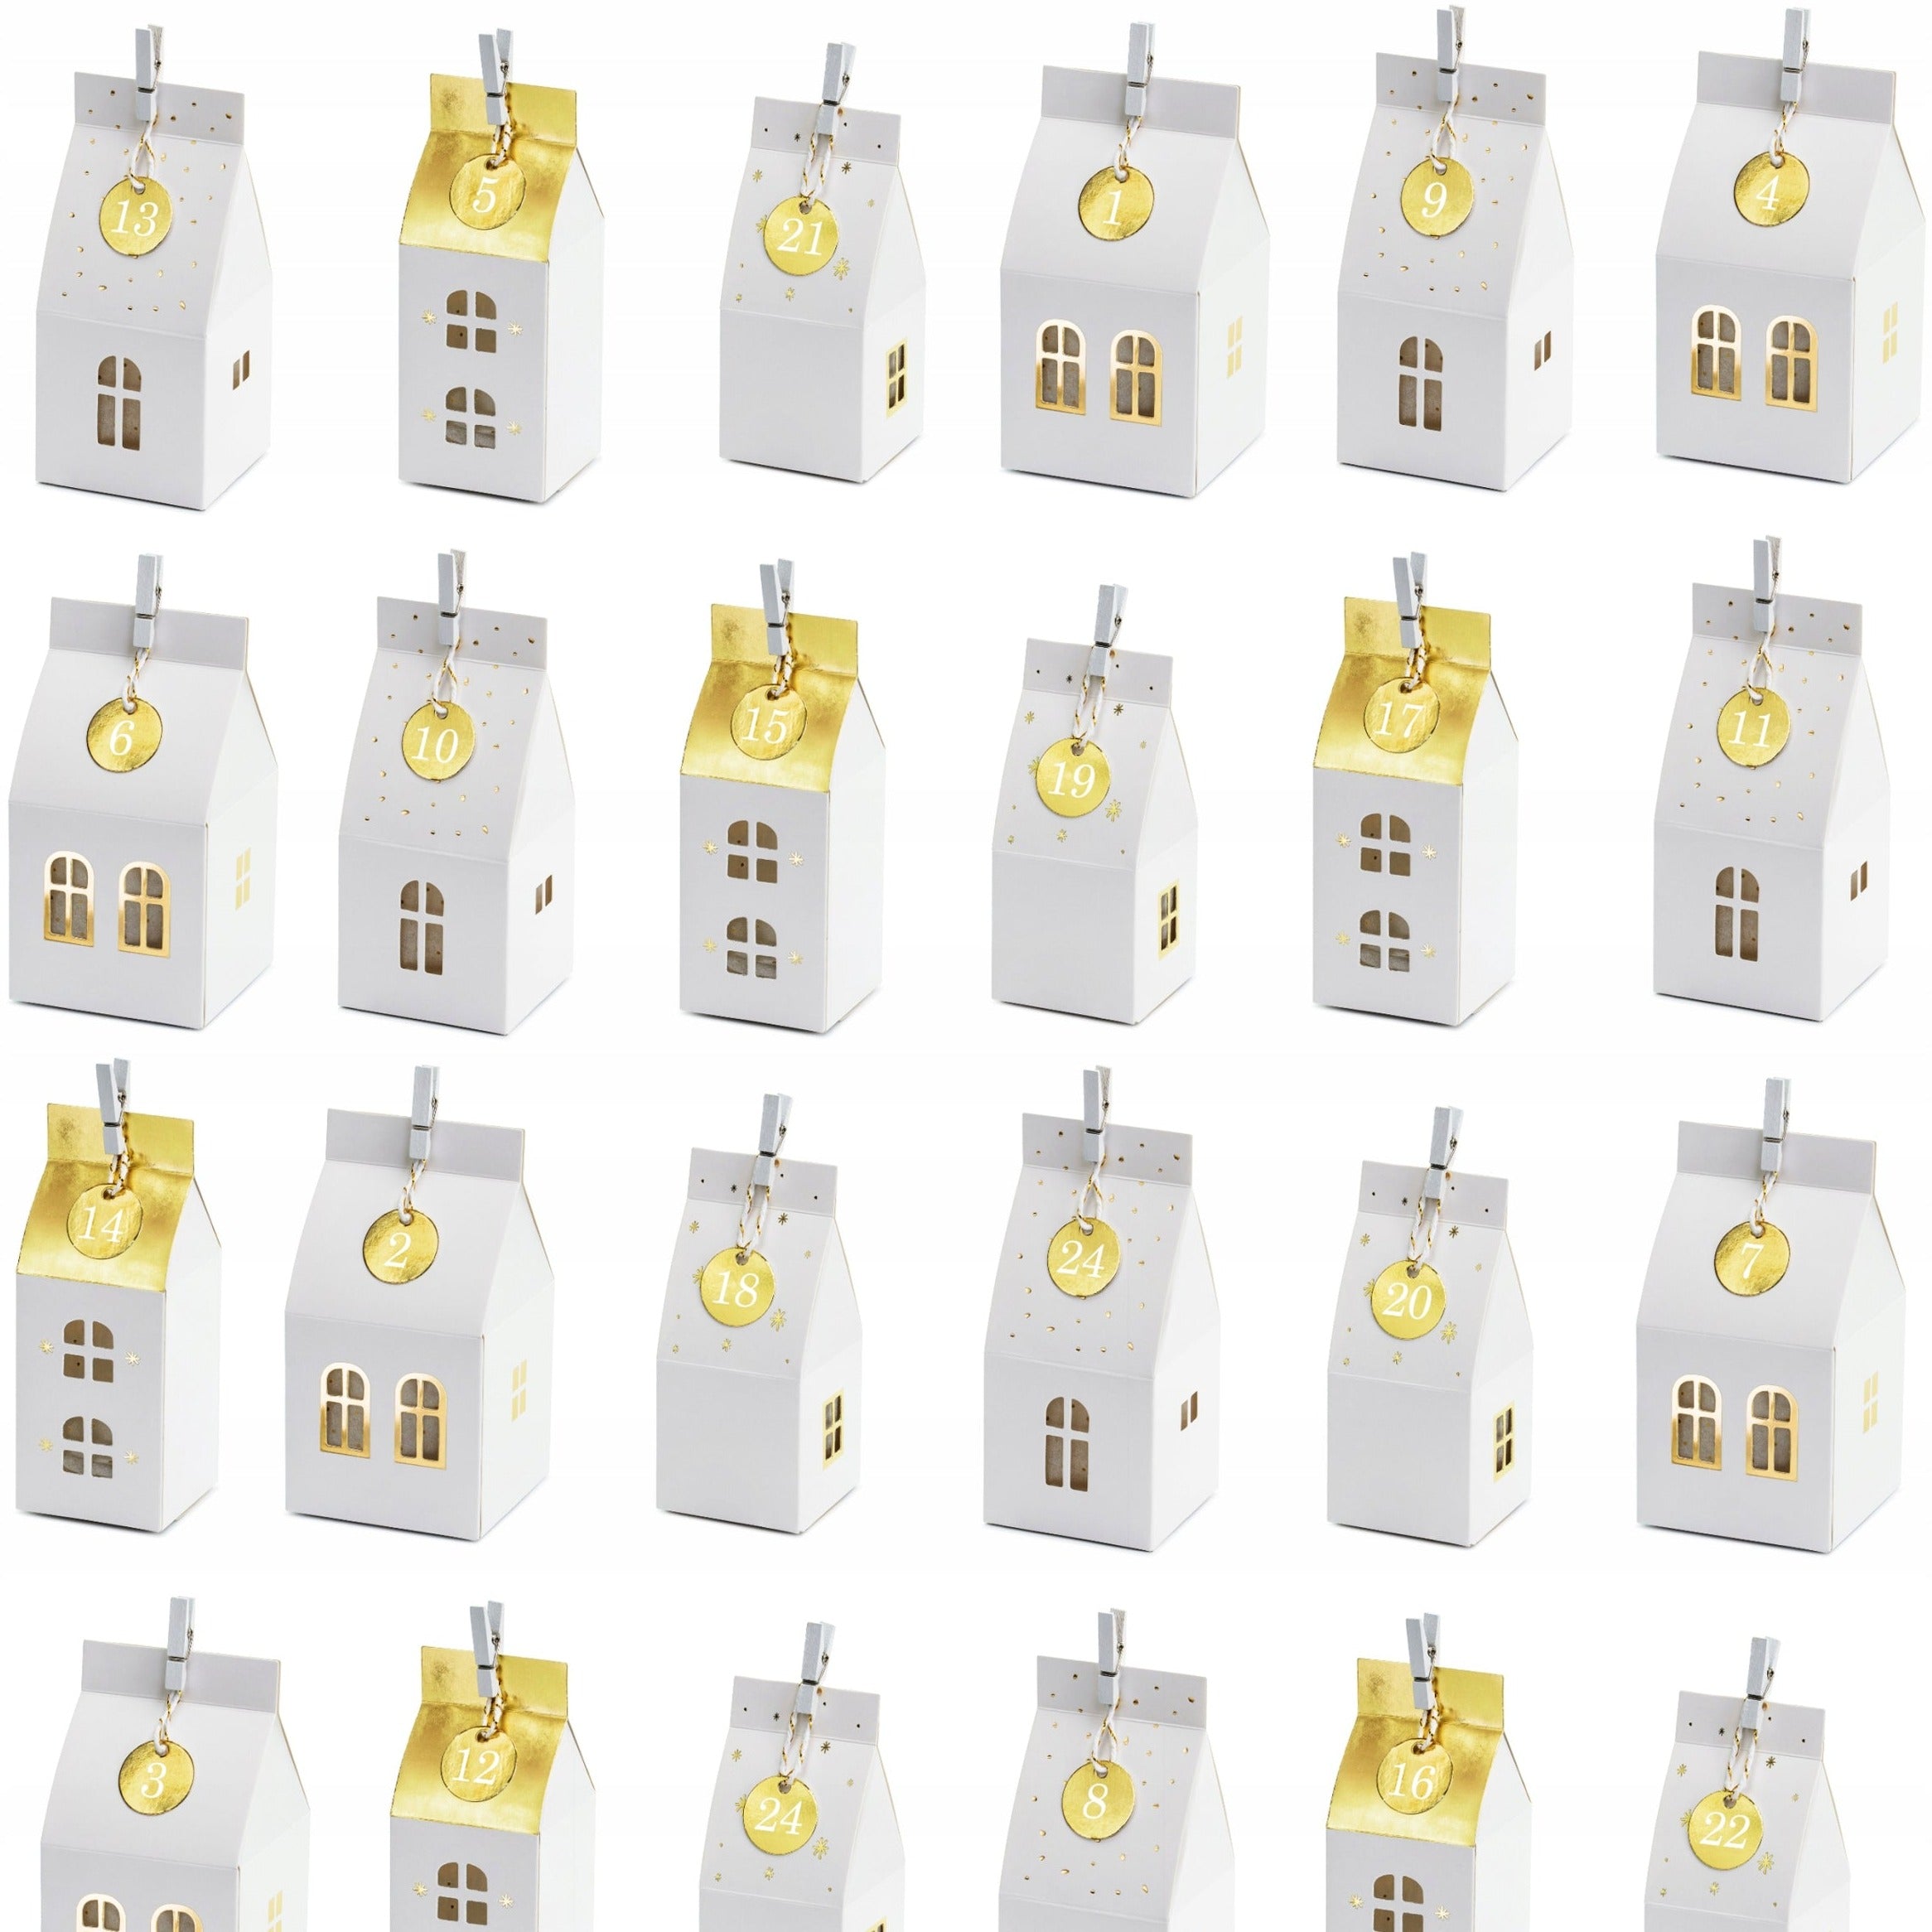 PartyDeco: Kisten für Adventskalender weiß und goldene Häuser